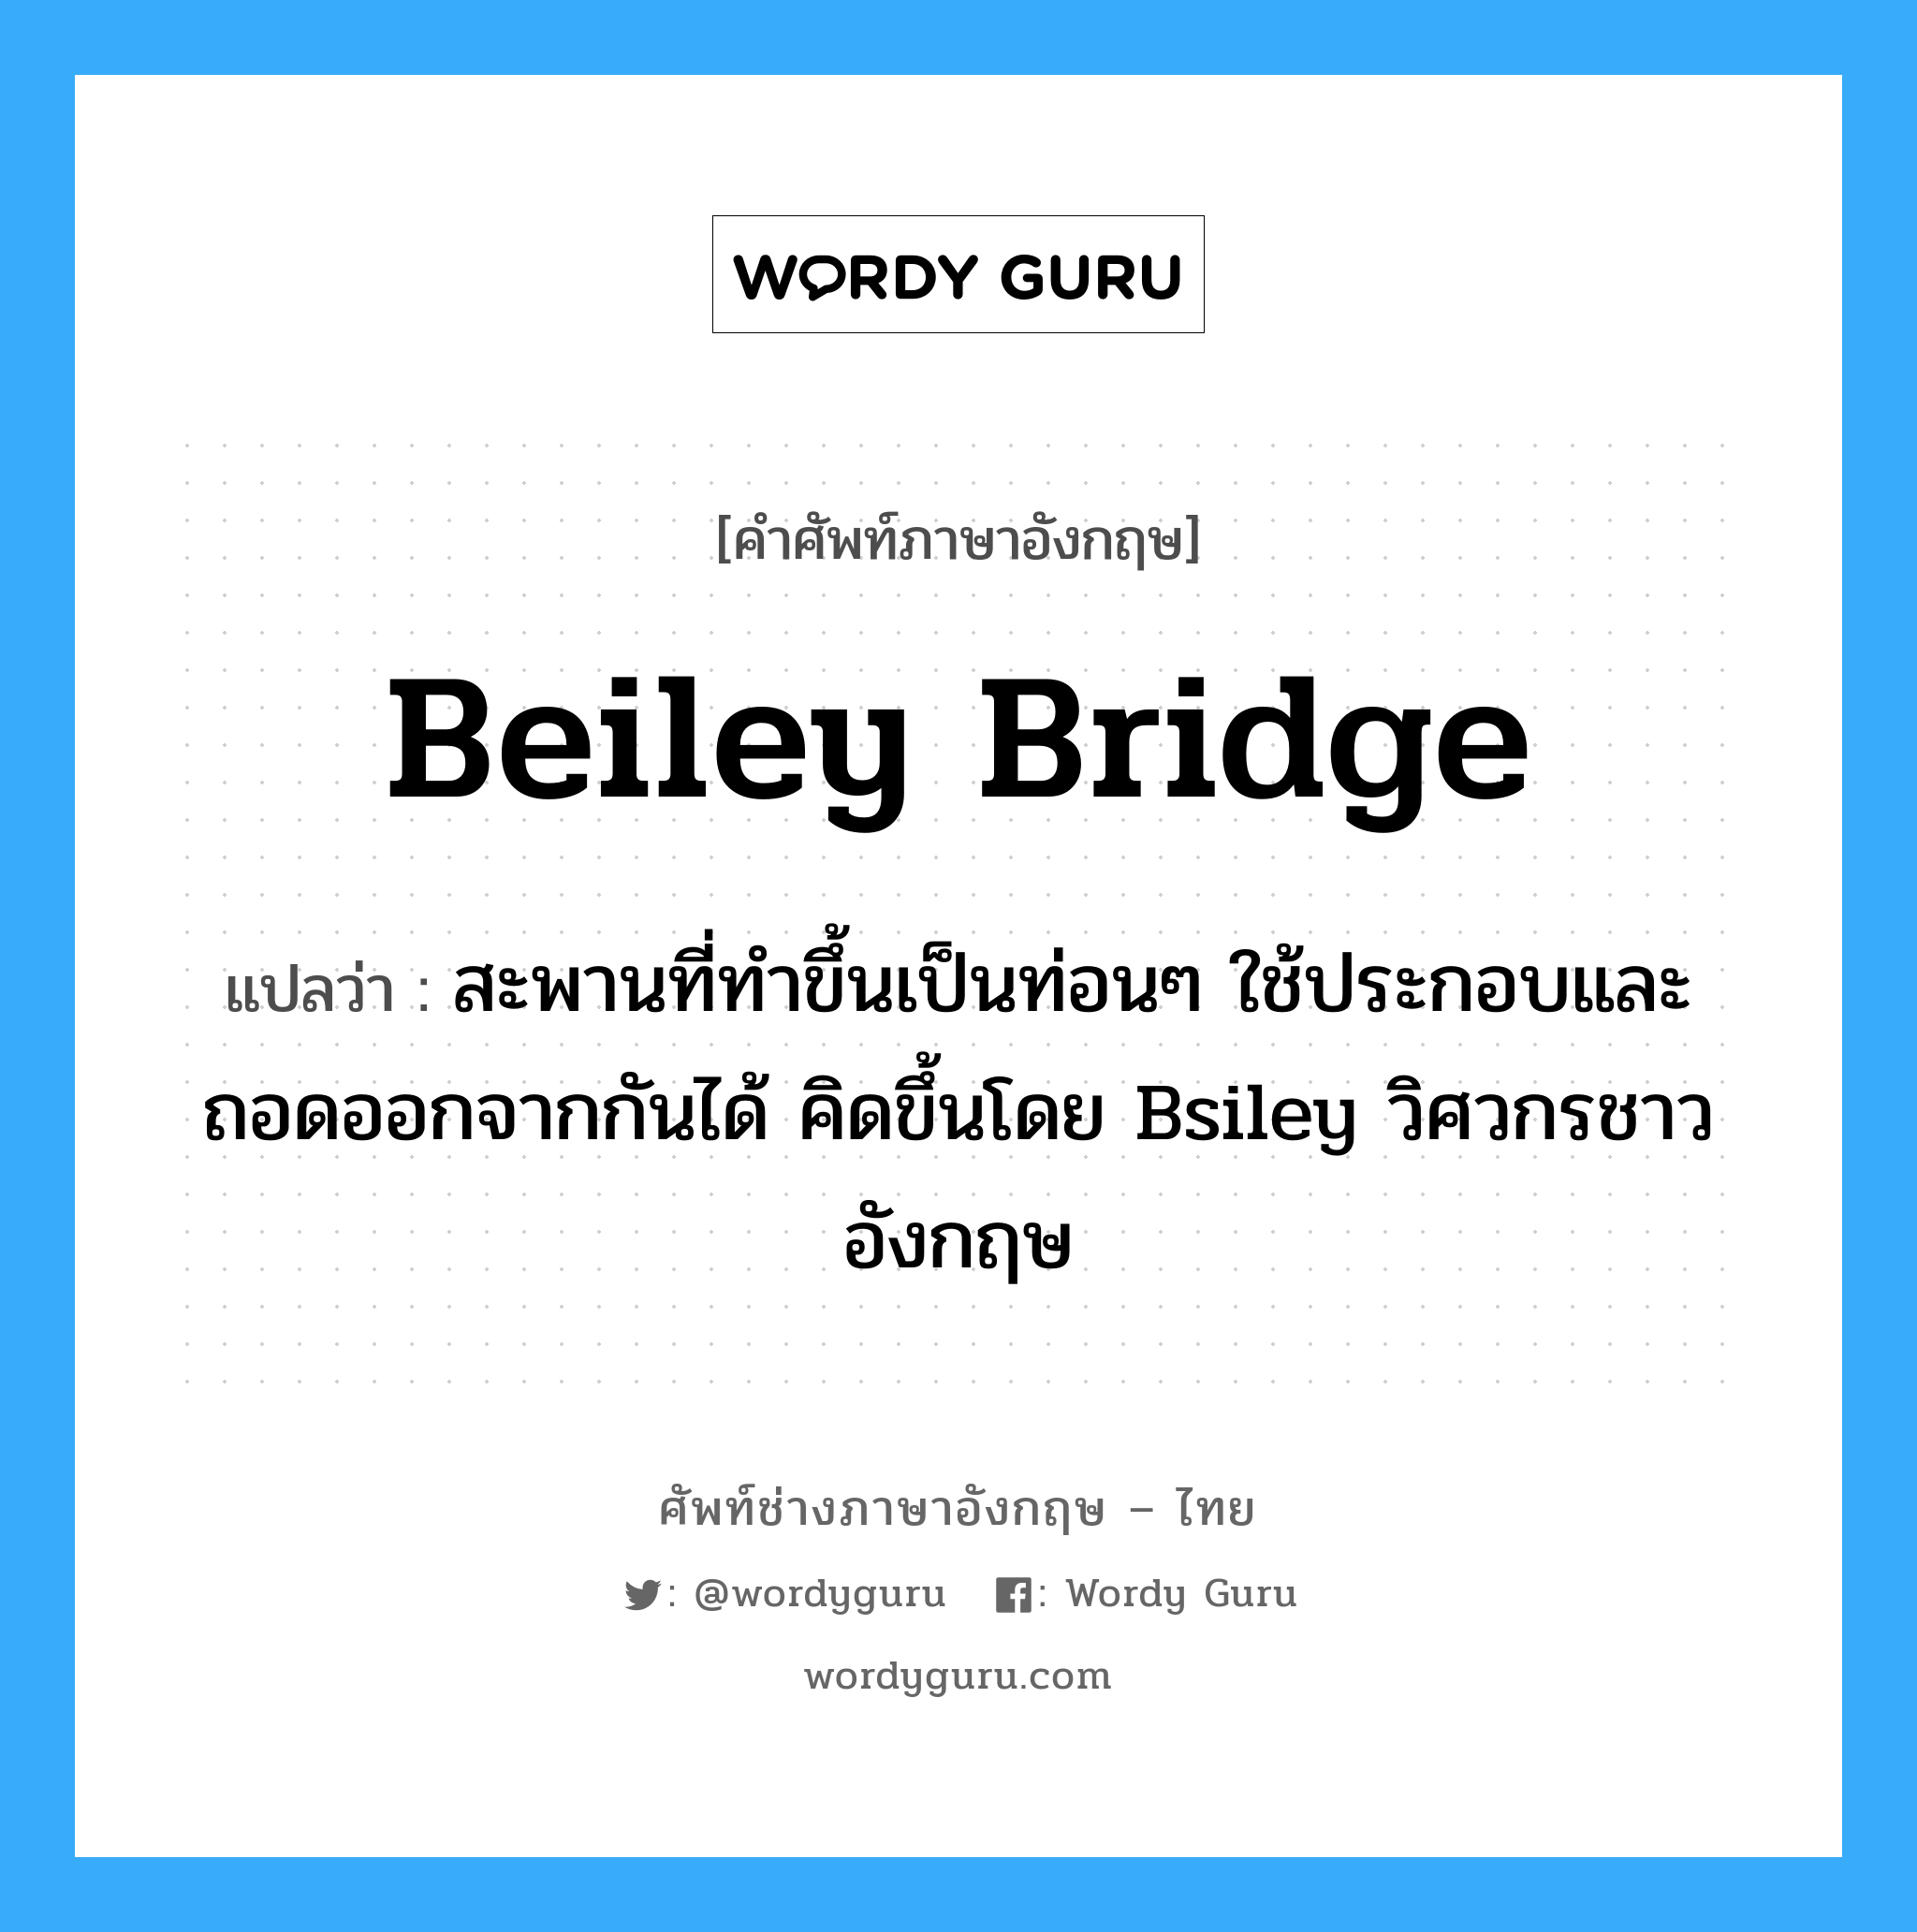 สะพานที่ทำขึ้นเป็นท่อนๆ ใช้ประกอบและถอดออกจากกันได้ คิดขึ้นโดย Bsiley วิศวกรชาวอังกฤษ ภาษาอังกฤษ?, คำศัพท์ช่างภาษาอังกฤษ - ไทย สะพานที่ทำขึ้นเป็นท่อนๆ ใช้ประกอบและถอดออกจากกันได้ คิดขึ้นโดย Bsiley วิศวกรชาวอังกฤษ คำศัพท์ภาษาอังกฤษ สะพานที่ทำขึ้นเป็นท่อนๆ ใช้ประกอบและถอดออกจากกันได้ คิดขึ้นโดย Bsiley วิศวกรชาวอังกฤษ แปลว่า Beiley Bridge